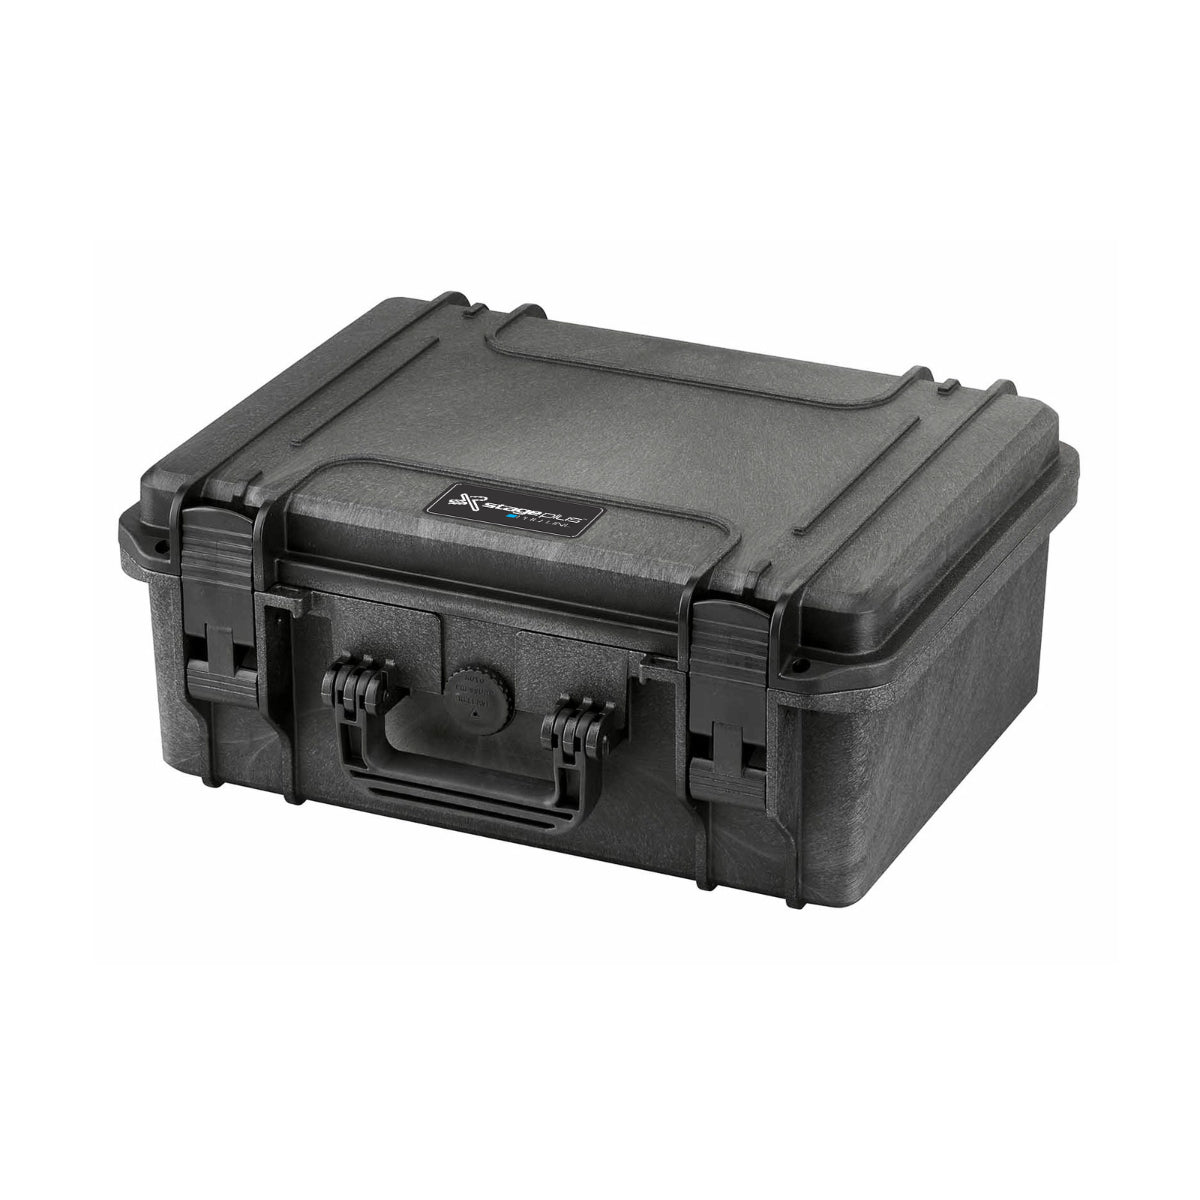 SP PRO 380H160LAPTOP Black Carry Case, Cubed Foam + Laptop Holder, ID: L380xW270xH160mm